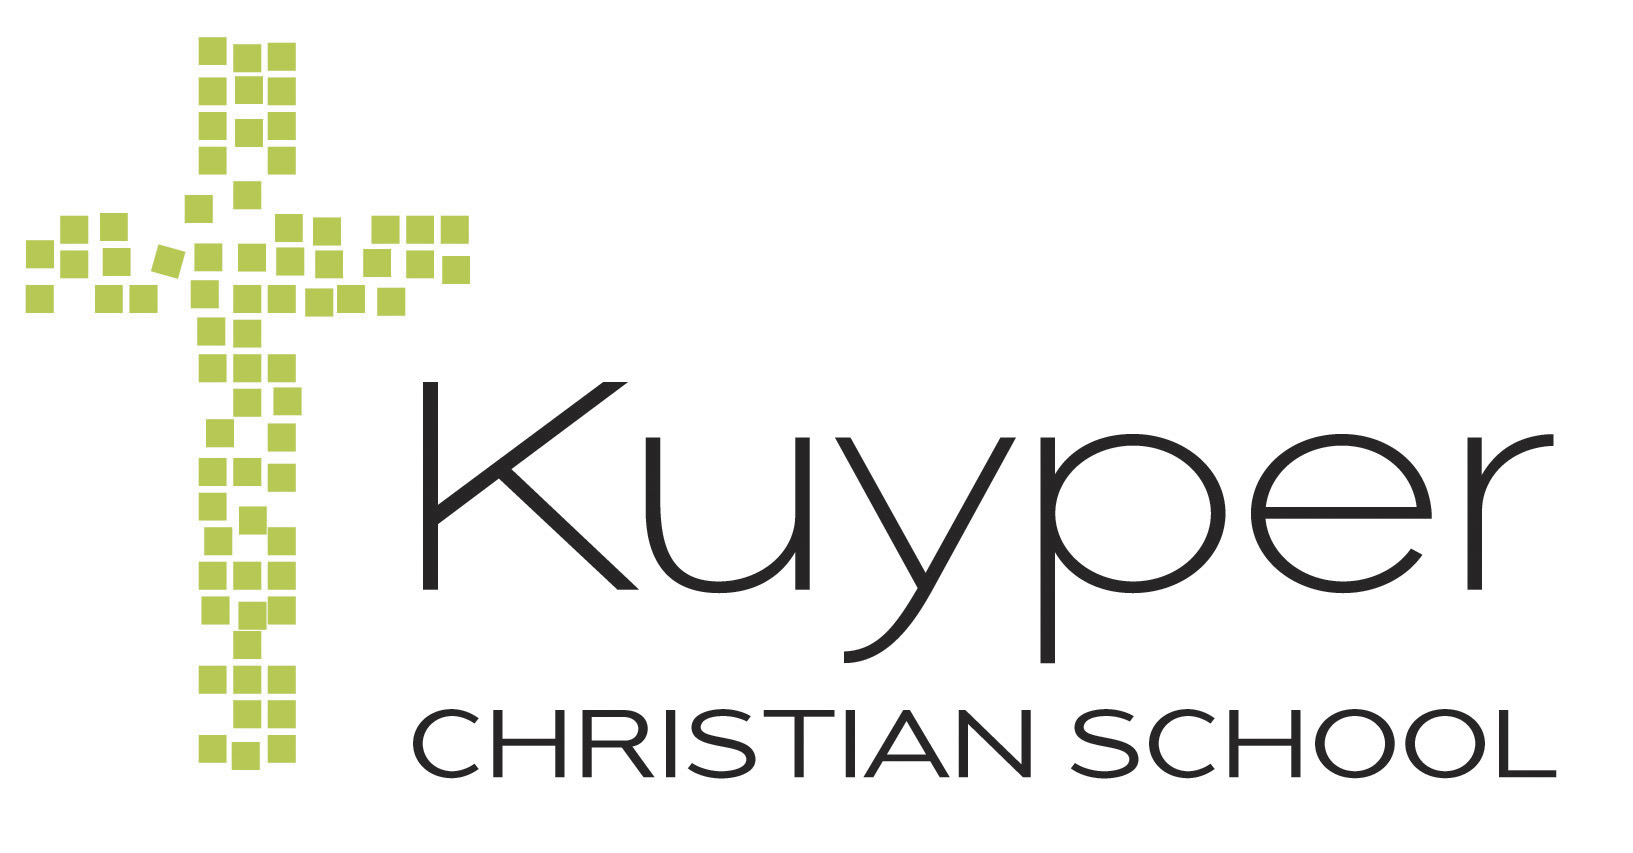 Kuyper Christian School